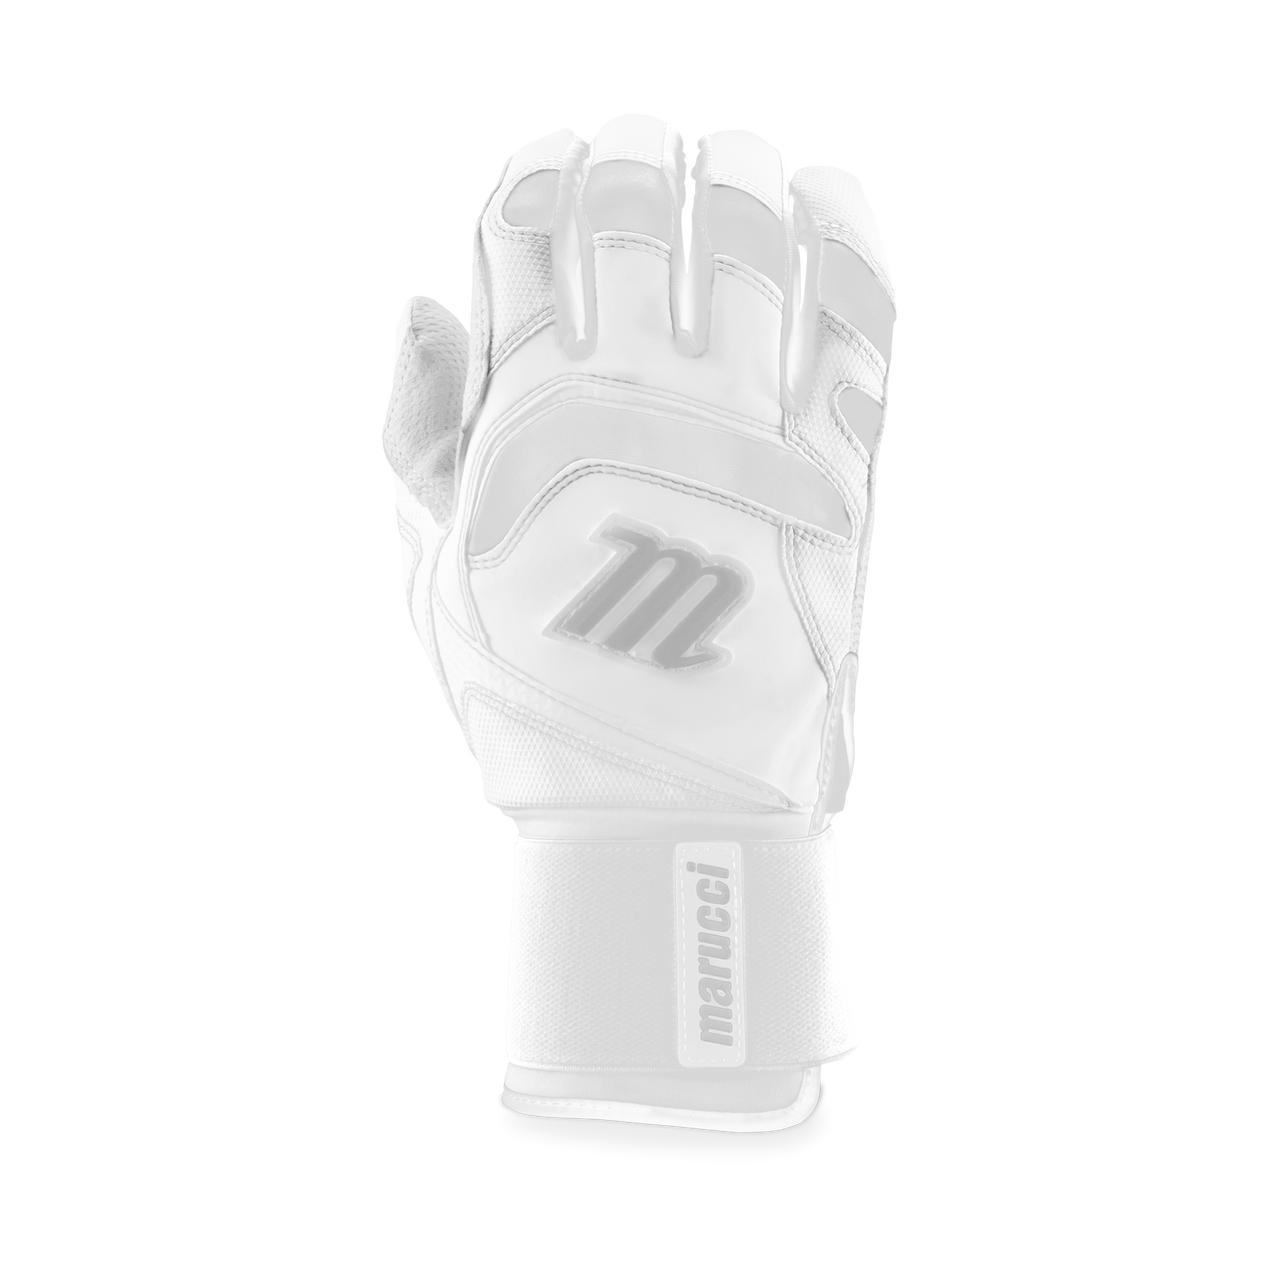 Marucci Men's Signature Full Wrap Batting Gloves Equipment MARUCCI White Small 